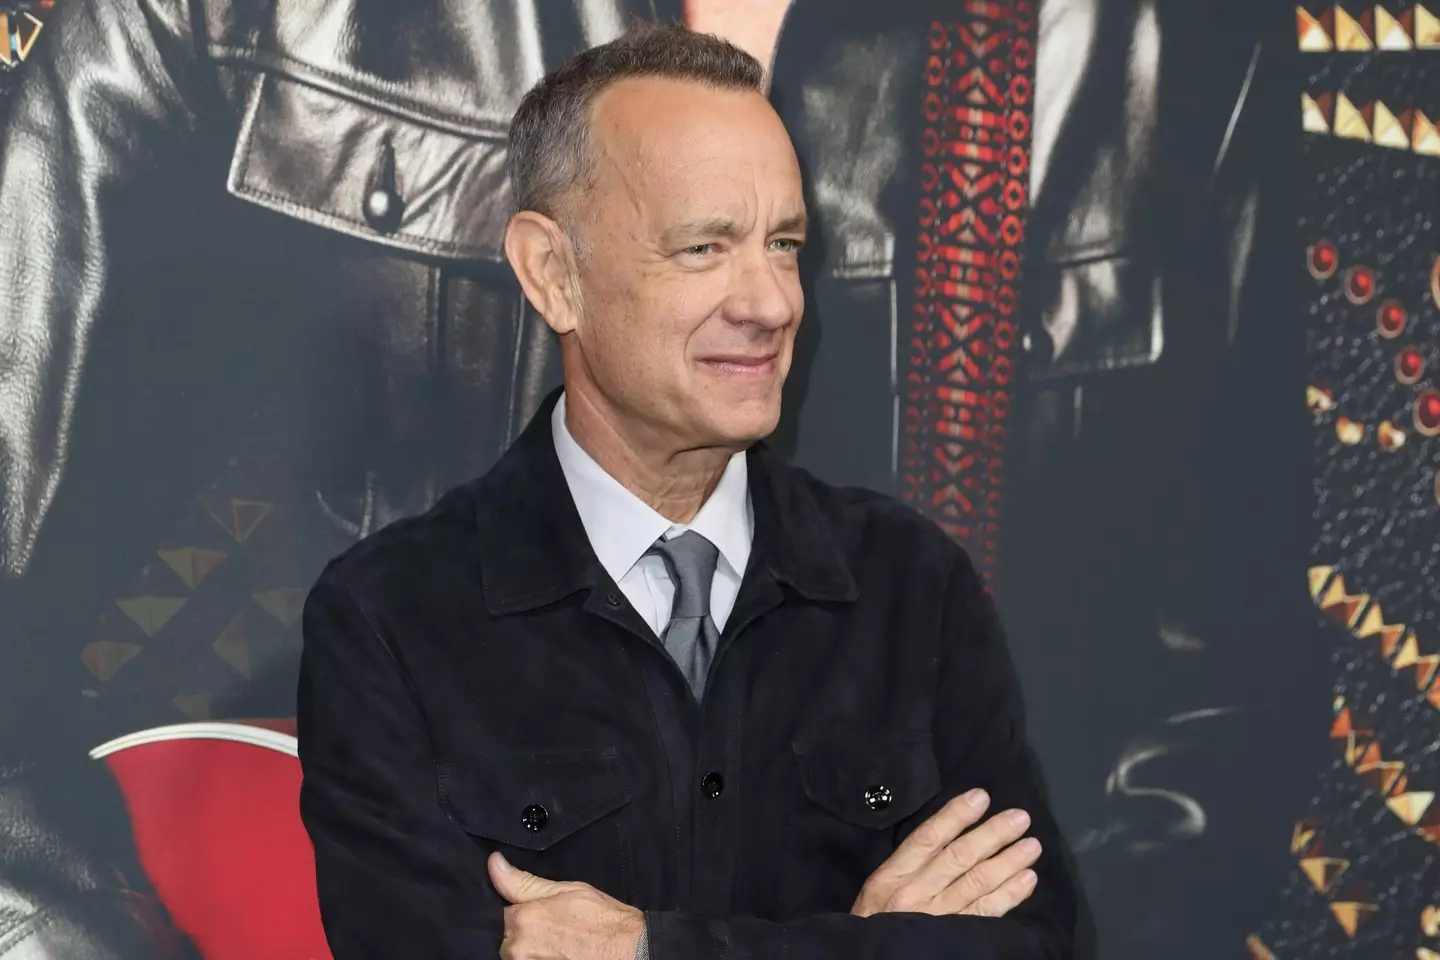 Tom Hanks has described the Da Vinci Code films as 'hooey'.